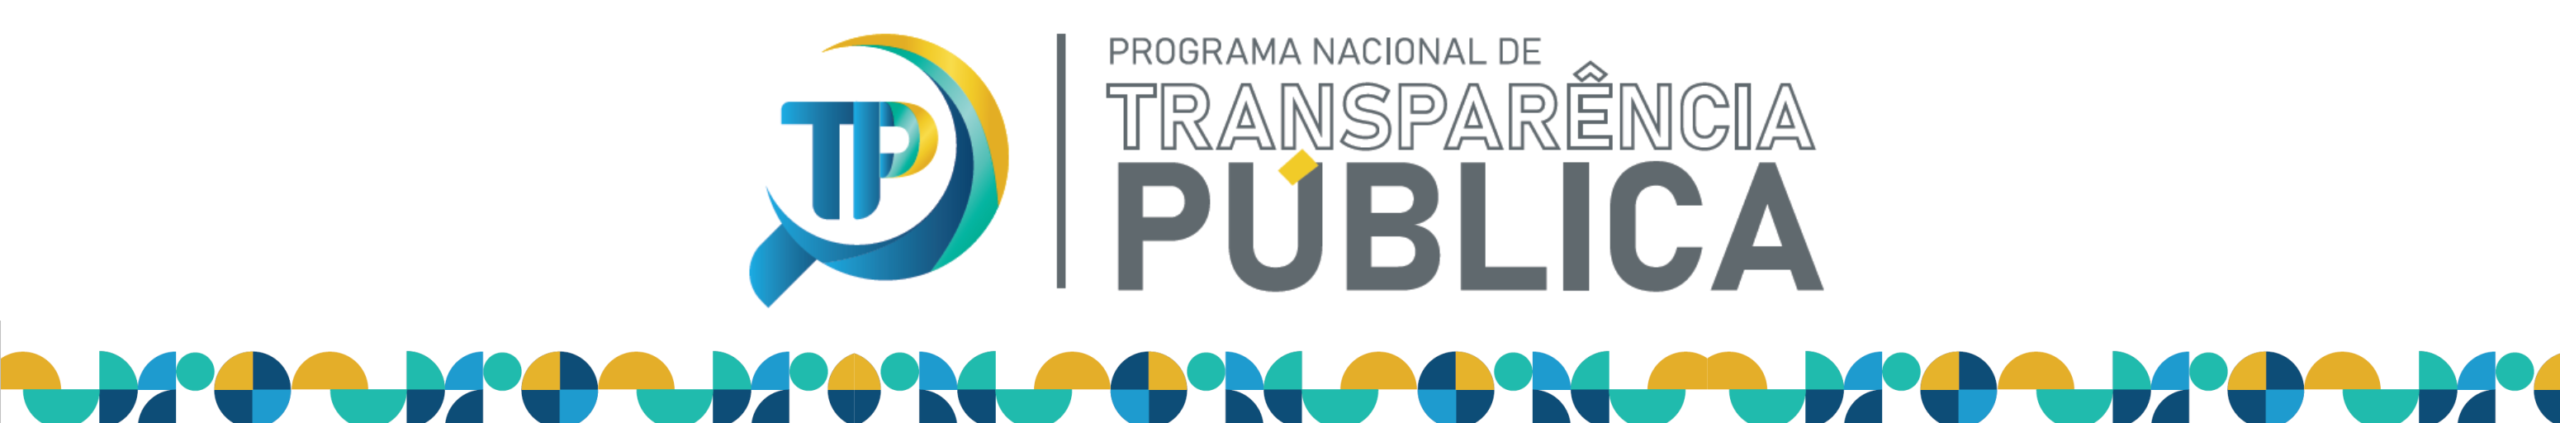 Radar Nacional da Transparência Pública